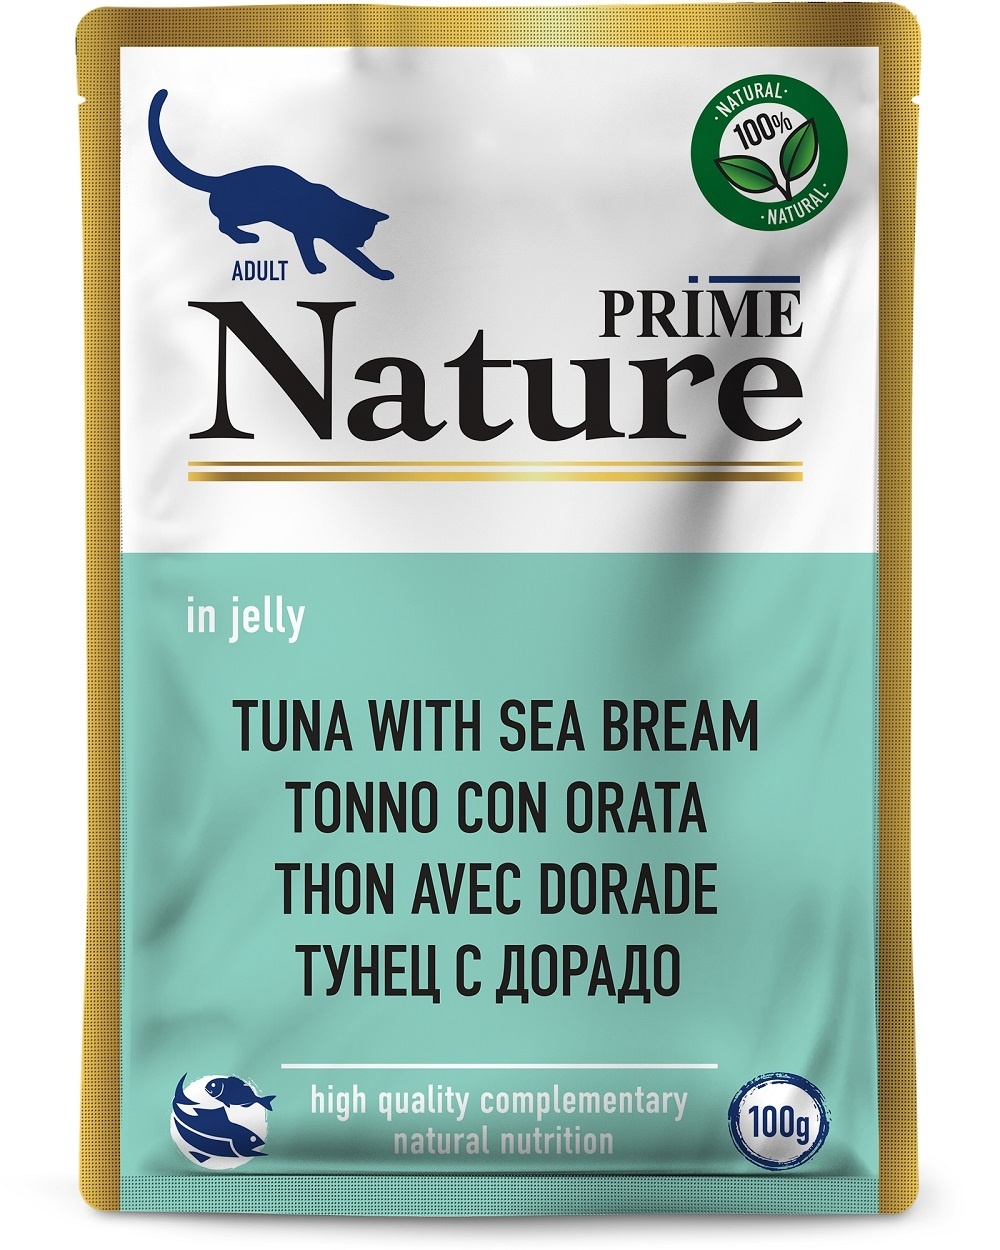 Prime Nature паучи для кошек: тунец с дорадо в желе (24 шт) Prime Nature паучи для кошек: тунец с дорадо в желе (24 шт) - фото 1